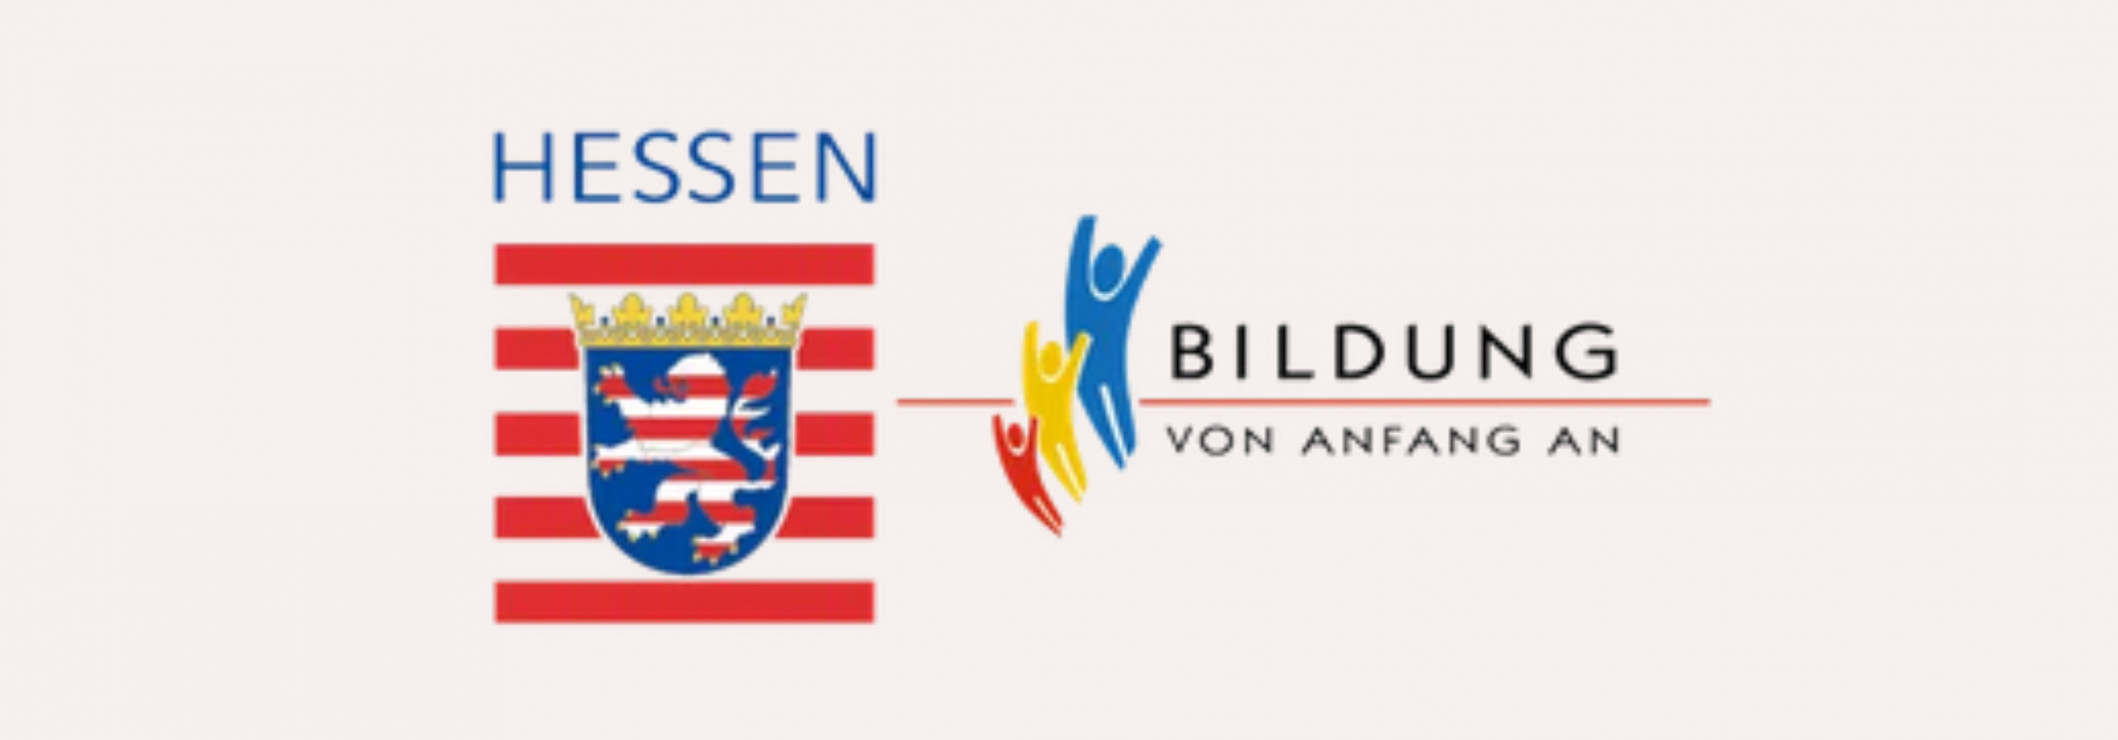 Wappen von Hessen neben dem Logo von 'Bildung von Anfang an', darauf sind drei bunte Figuren hintereinander abgebildet. Die Figuren werden von vorne nach hinten größer und werfen die Arme in die Höhe.